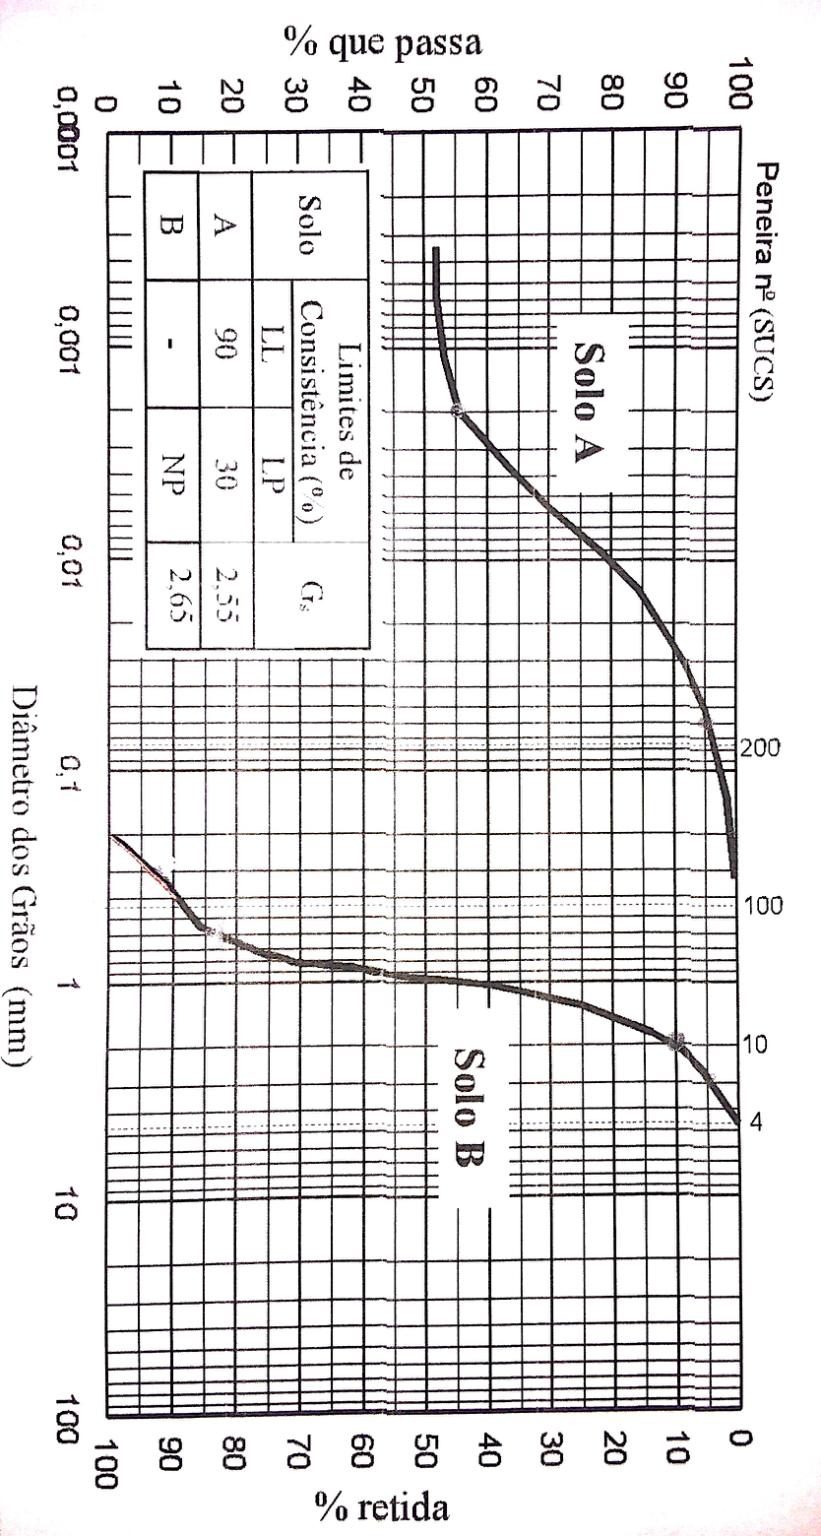 TC-033 LABORATÓRIO DE MECÂNICA DOS SOLOS 2) Para dois solos ( Solo A e Solo B ) foram procedidos os ensaios de peneiramento e sedimentação que resultaram nas curvas granulométricas abaixo.